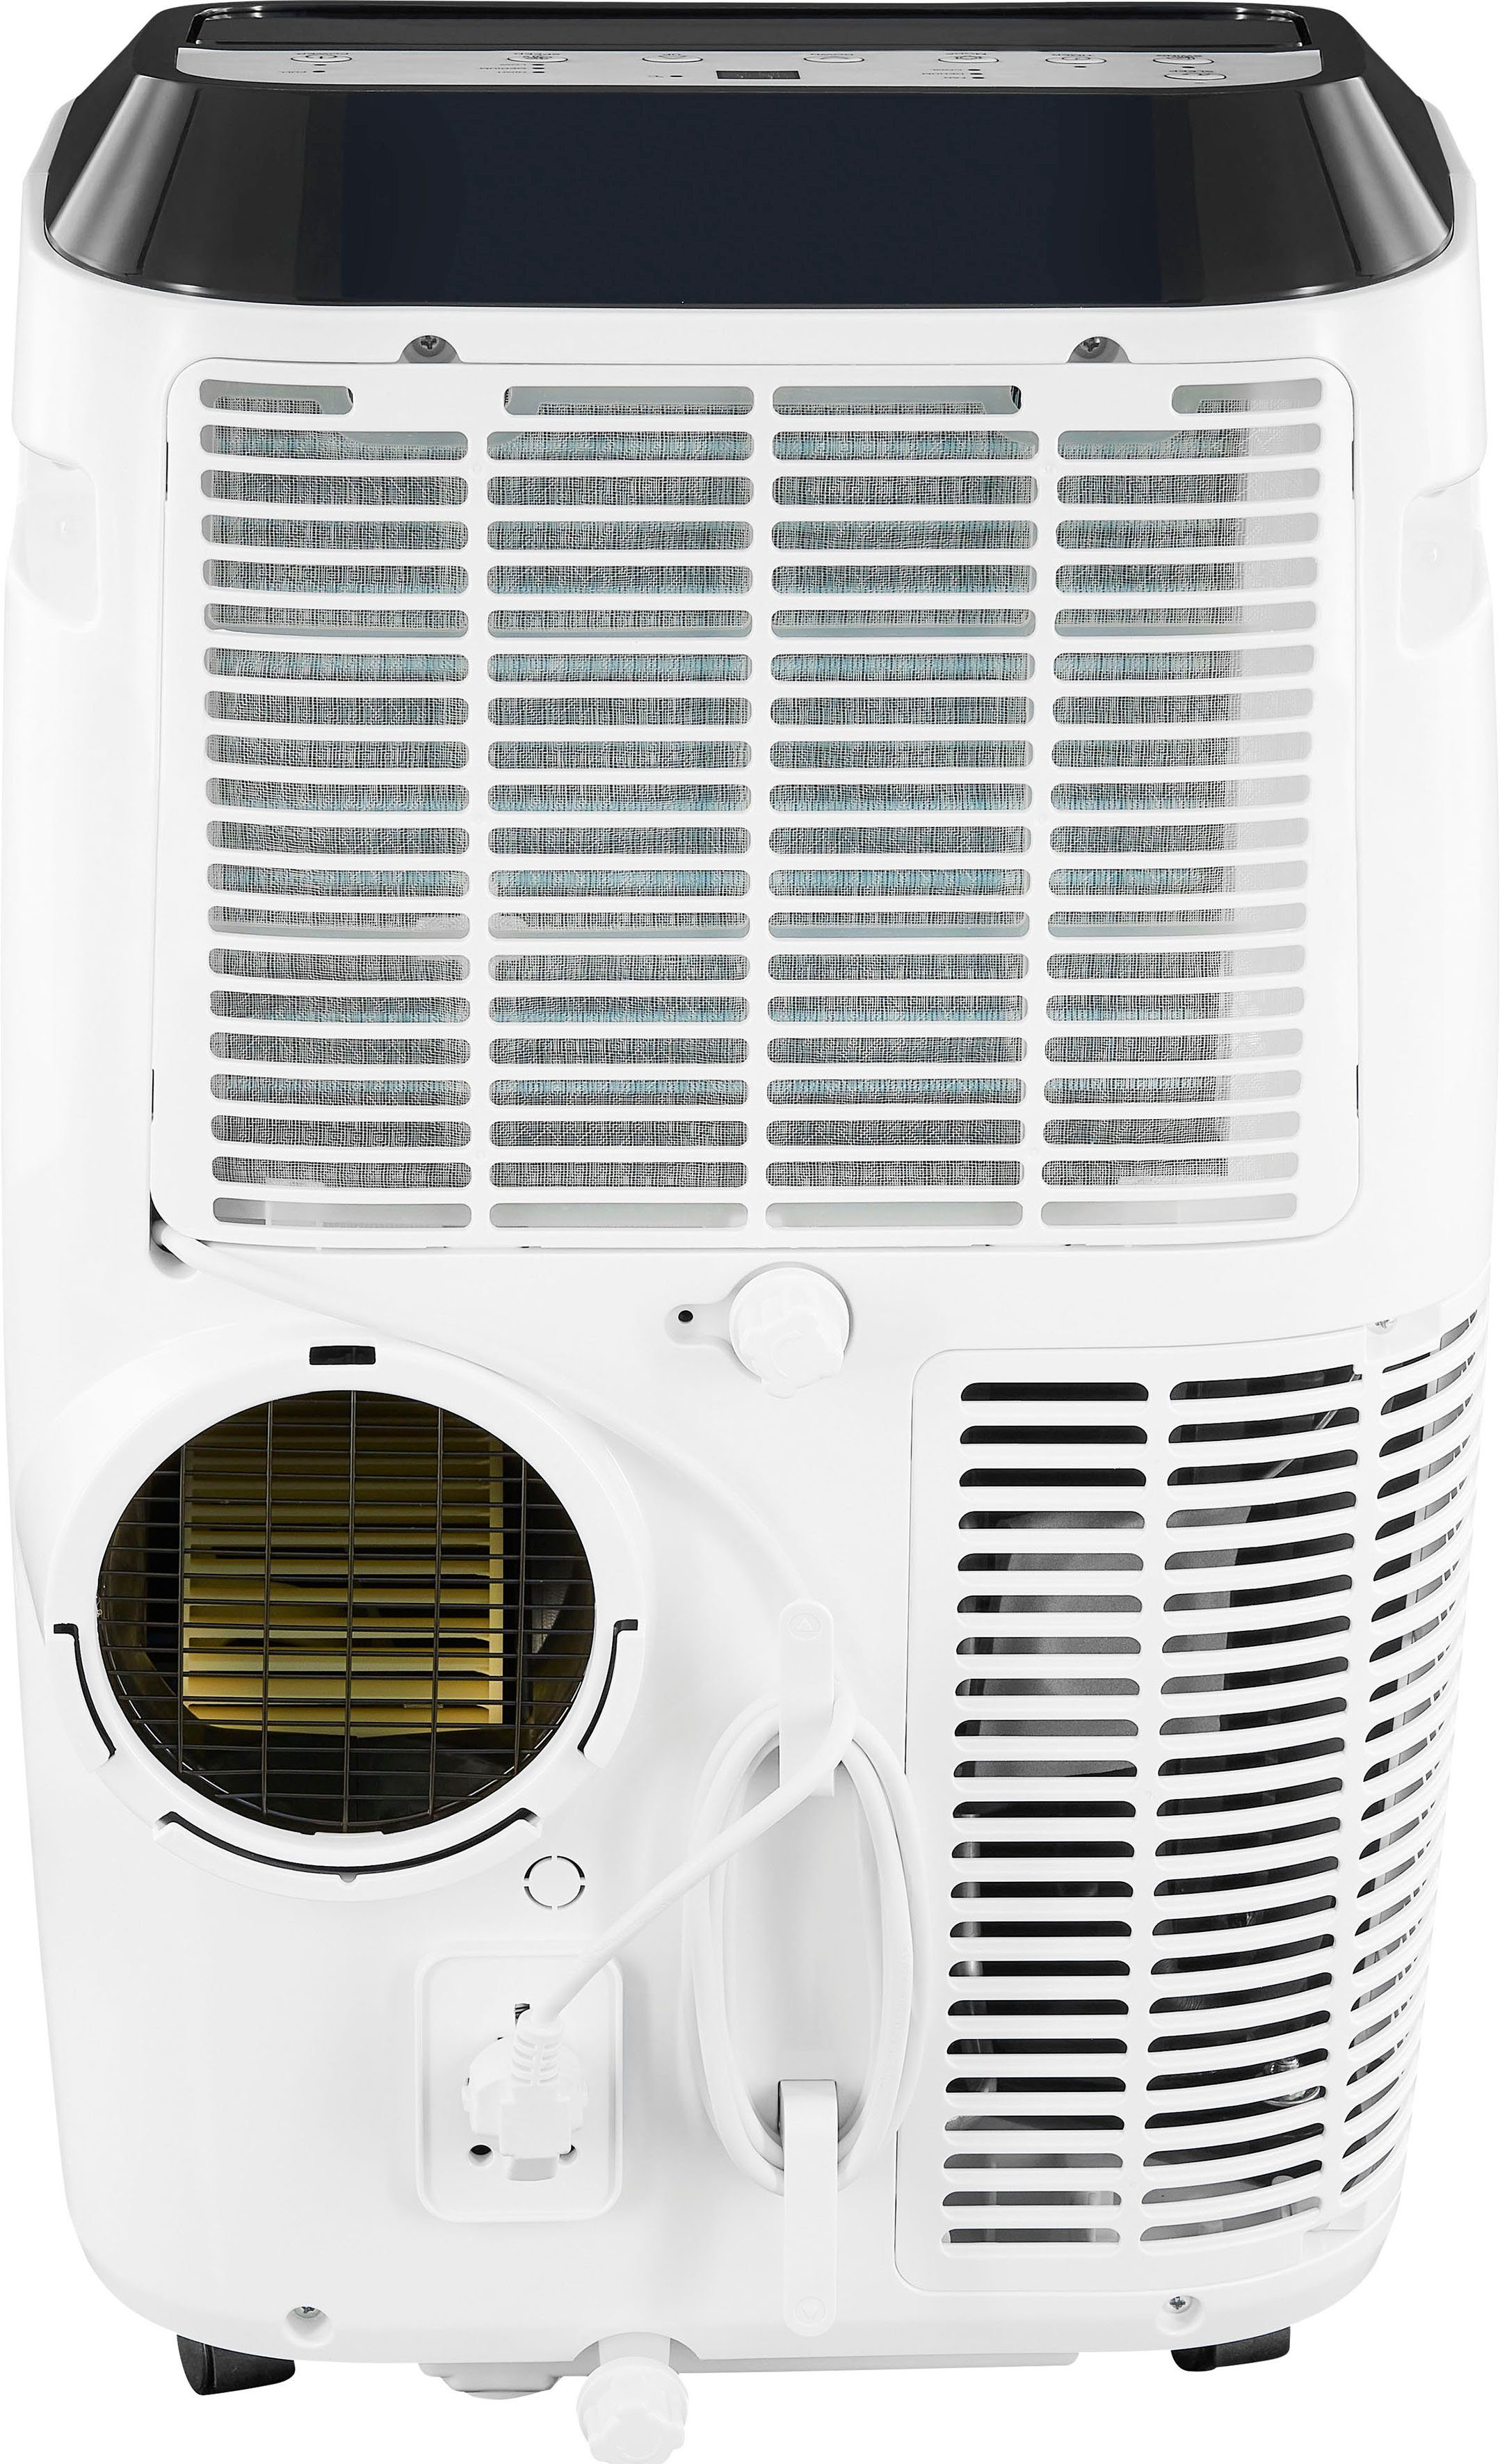 Gutfels 3-in-1-Klimagerät CM 61249 we, für - 38 Entfeuchtung, Räume m² geeignet Luftkühlung